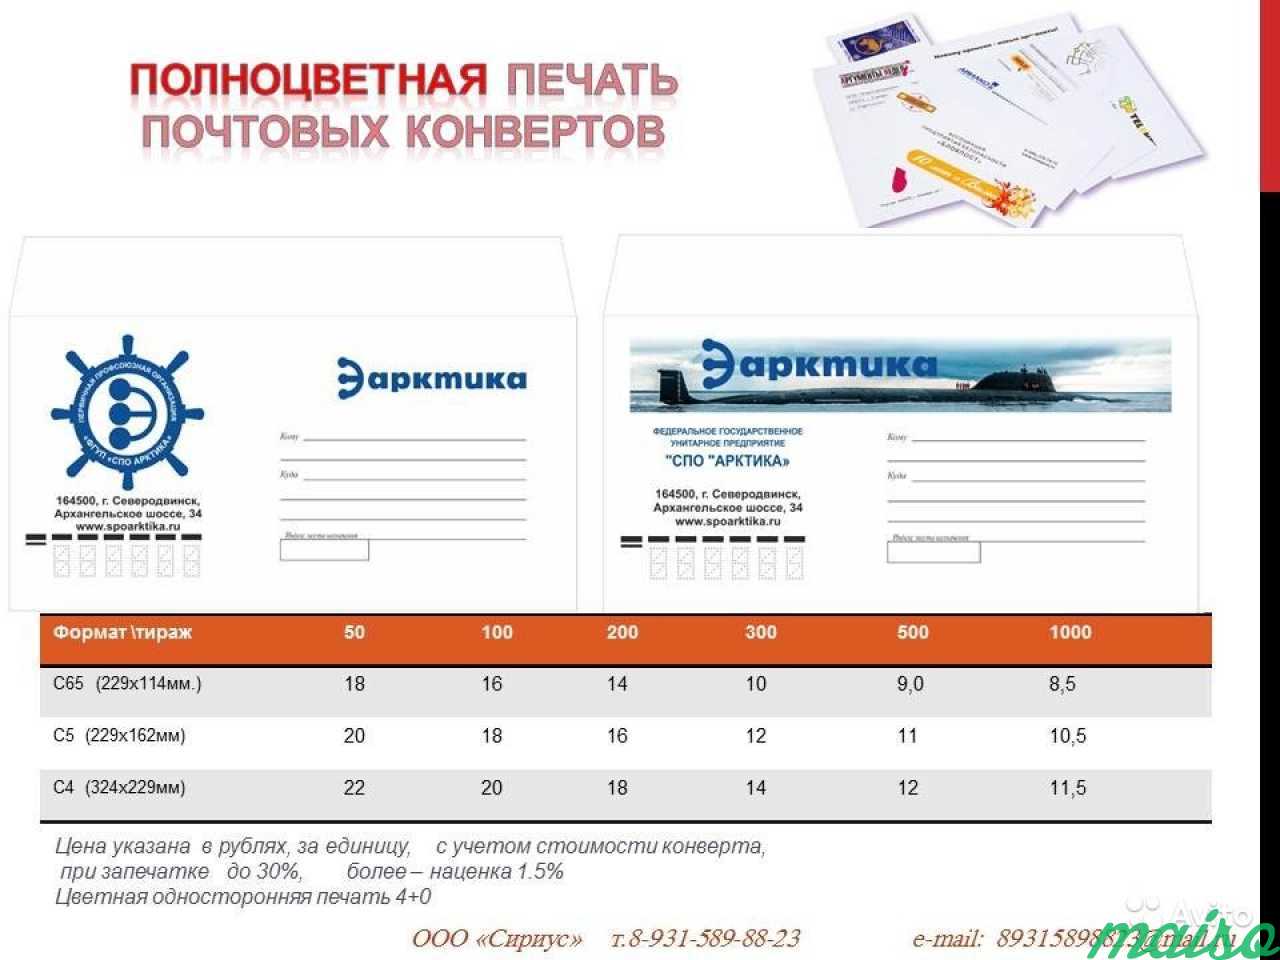 Печать на почтовых конвертах в Санкт-Петербурге. Фото 1